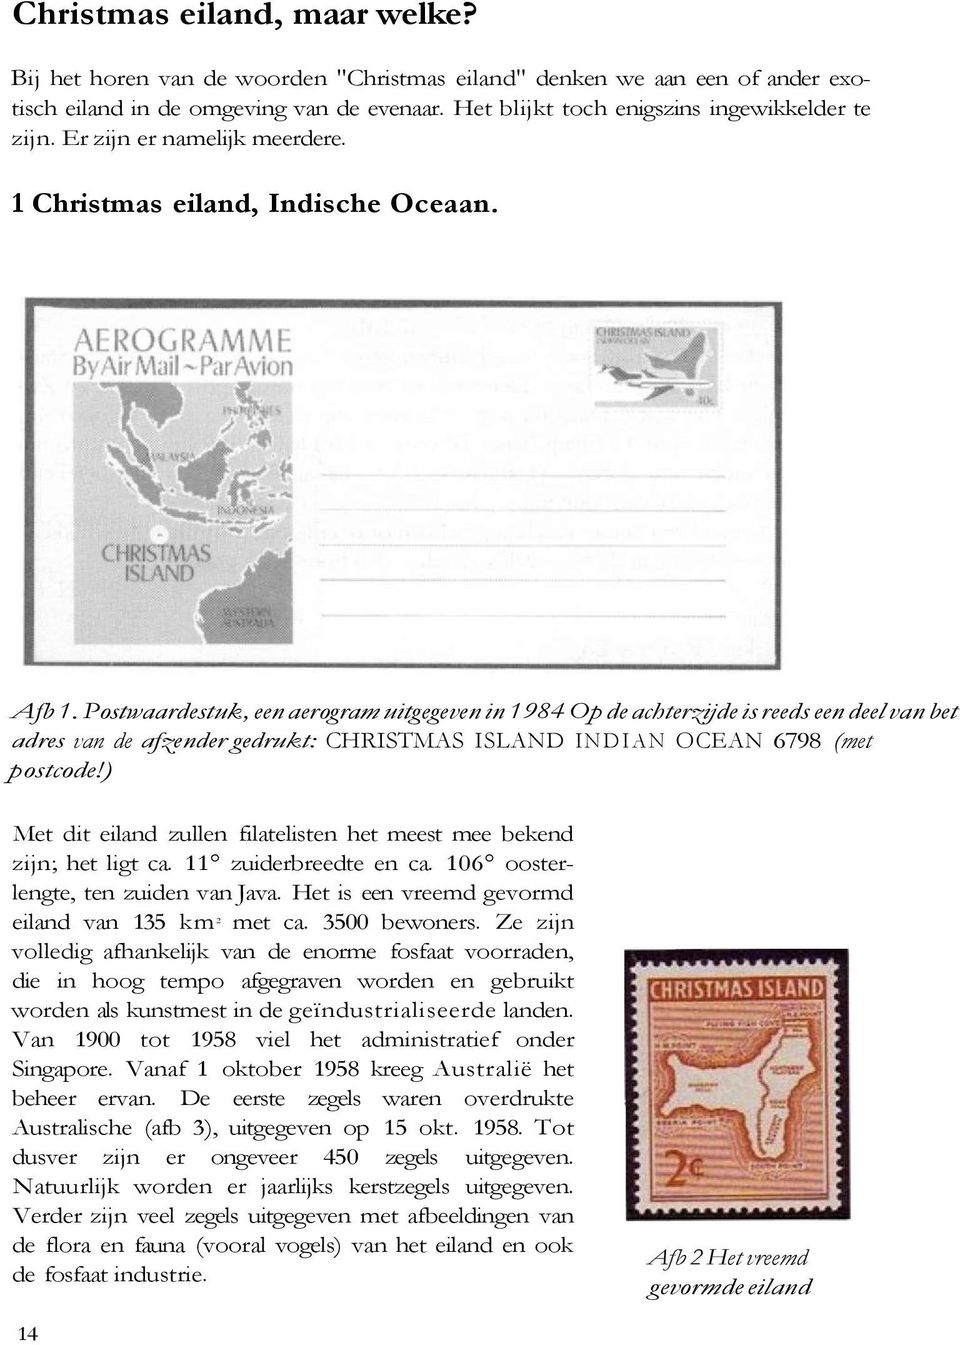 Postwaardestuk, een aerogram uitgegeven in 1984 Op de achterzijde is reeds een deel van bet adres van de afzender gedrukt: CHRISTMAS ISLAND INDIAN OCEAN 6798 (met postcode!